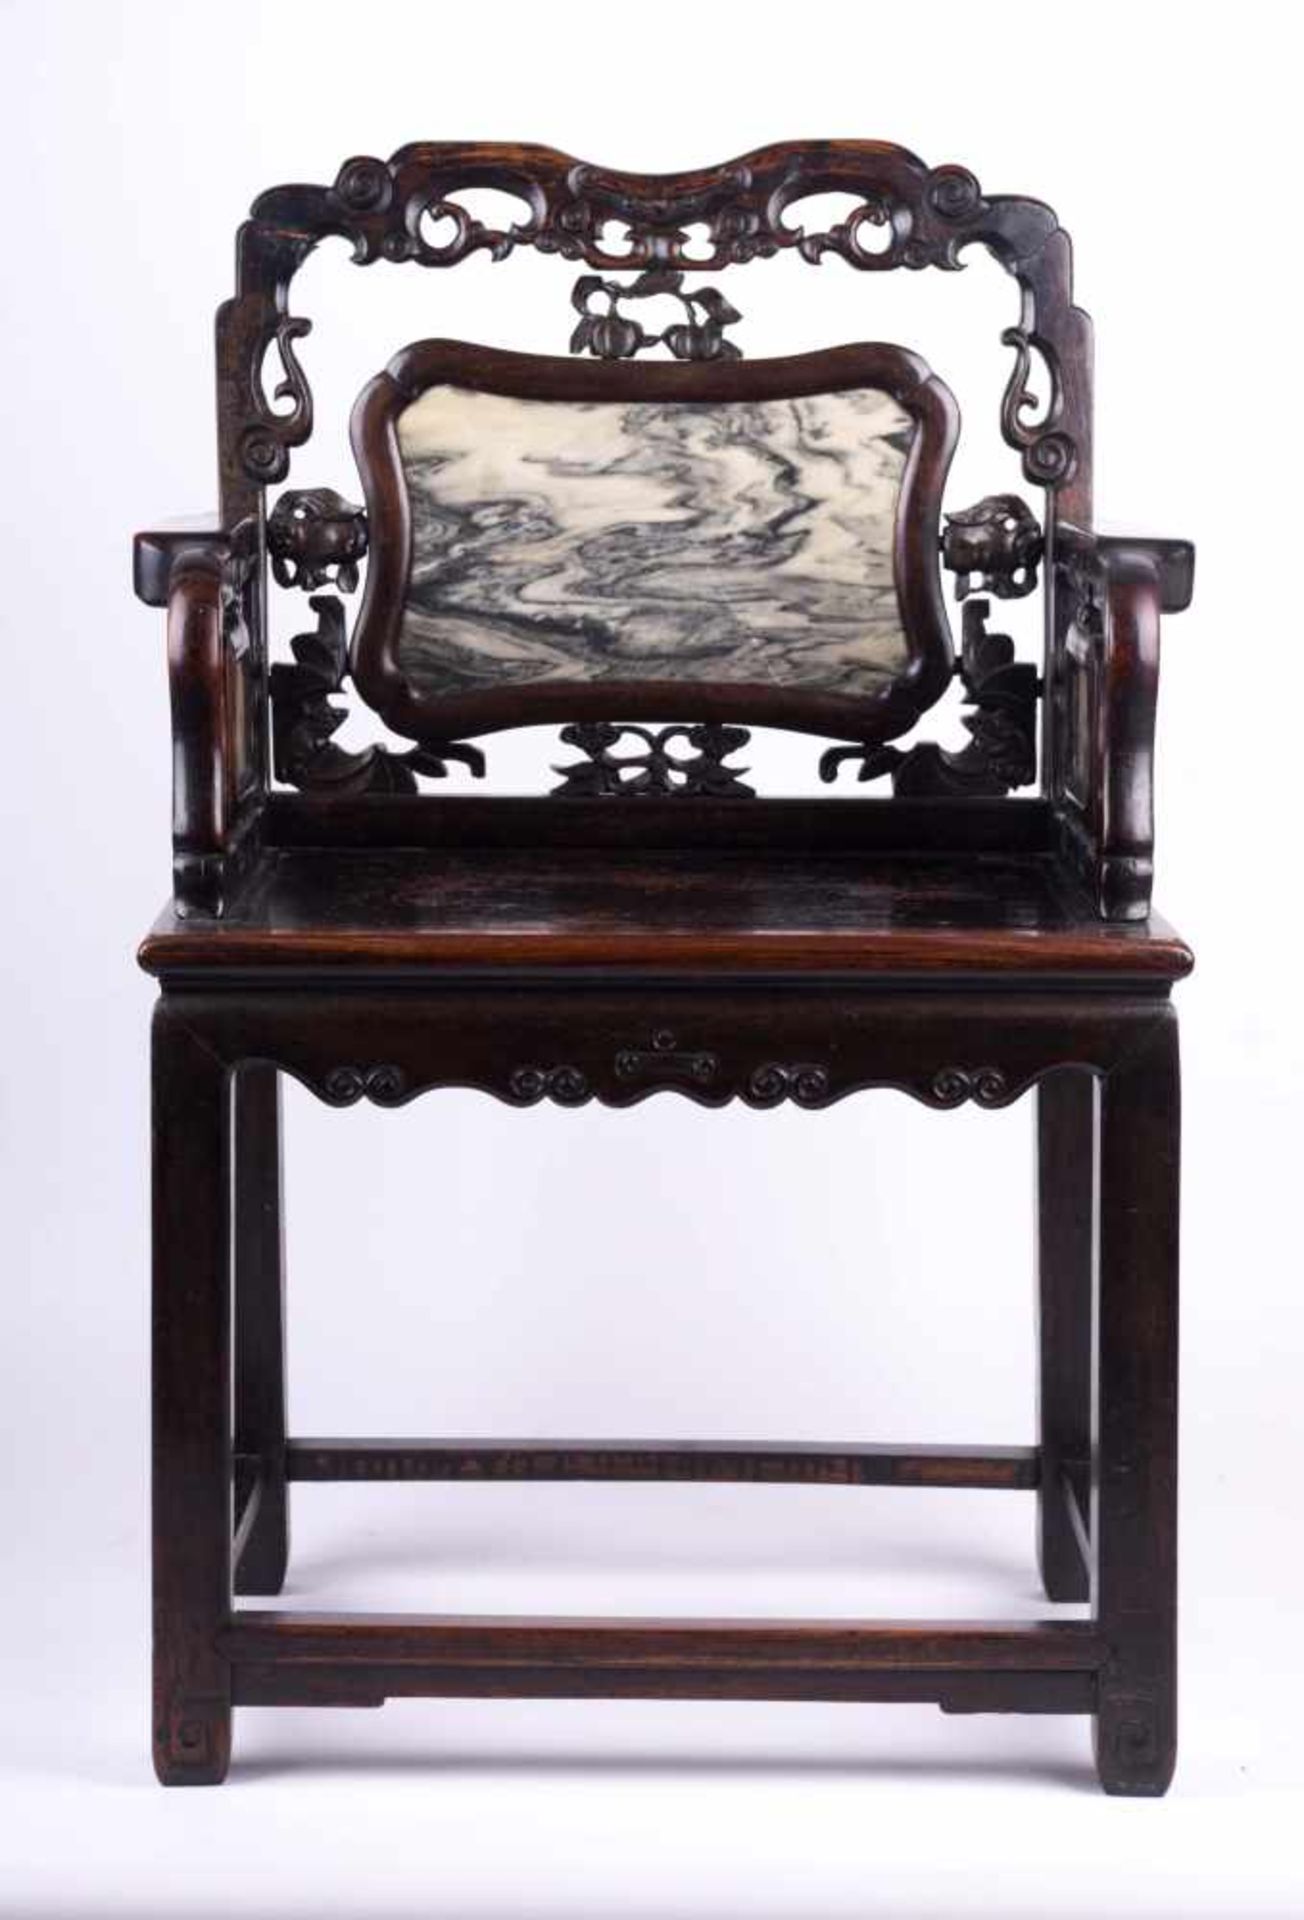 Stuhl China 19. Jhd. / Chair, China 19th century schweres Holz, in Arm- und Rückenlehne sind - Bild 2 aus 4